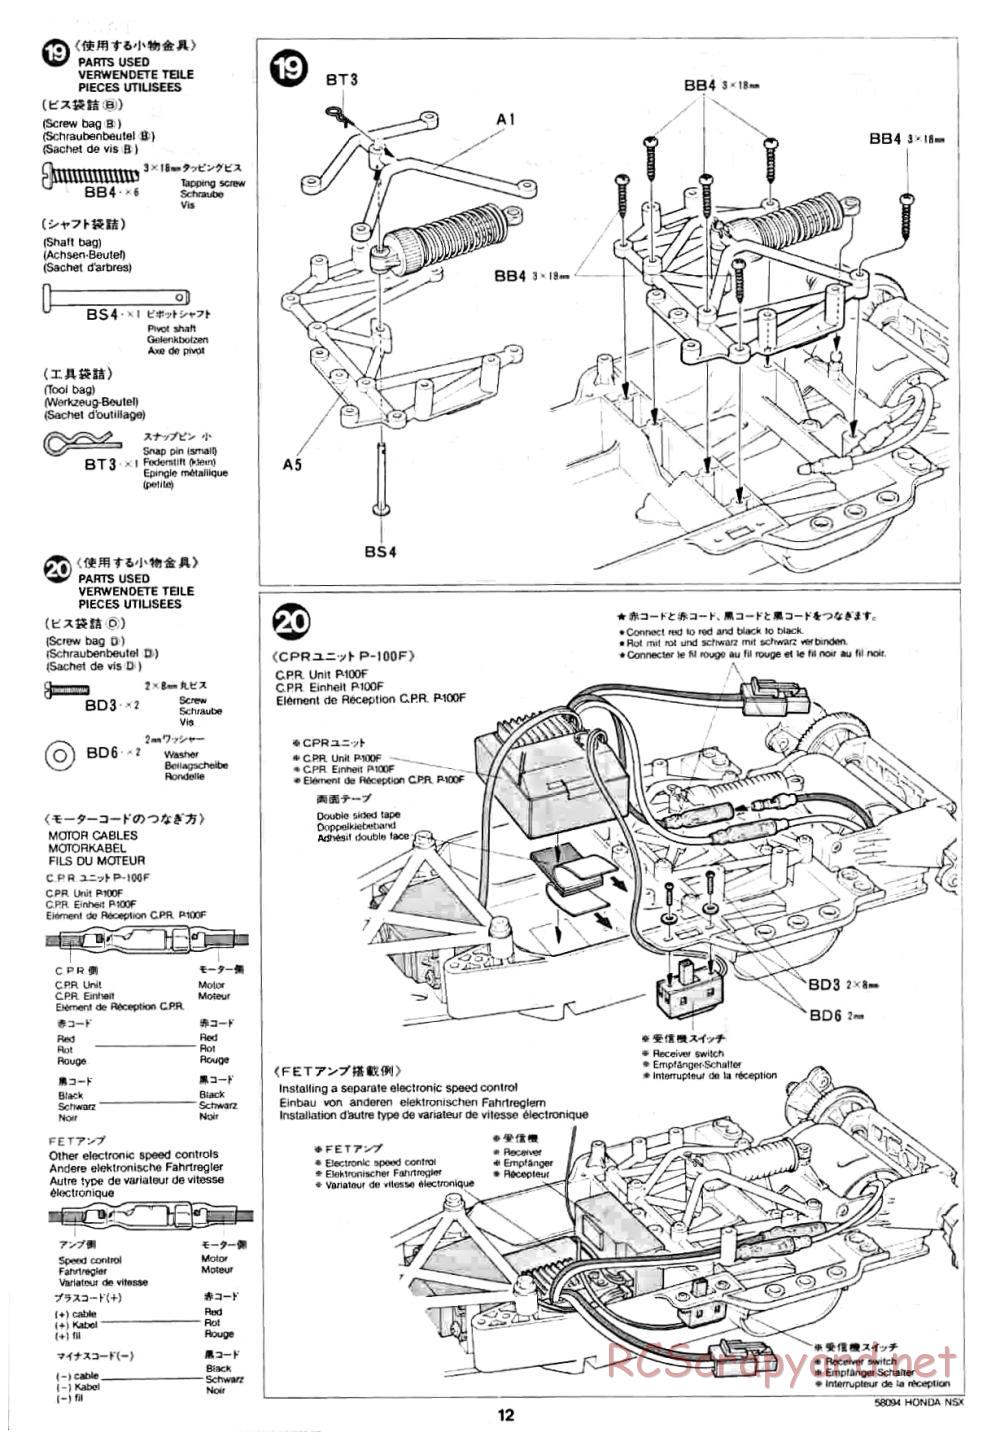 Tamiya - Honda NSX - 58094 - Manual - Page 12